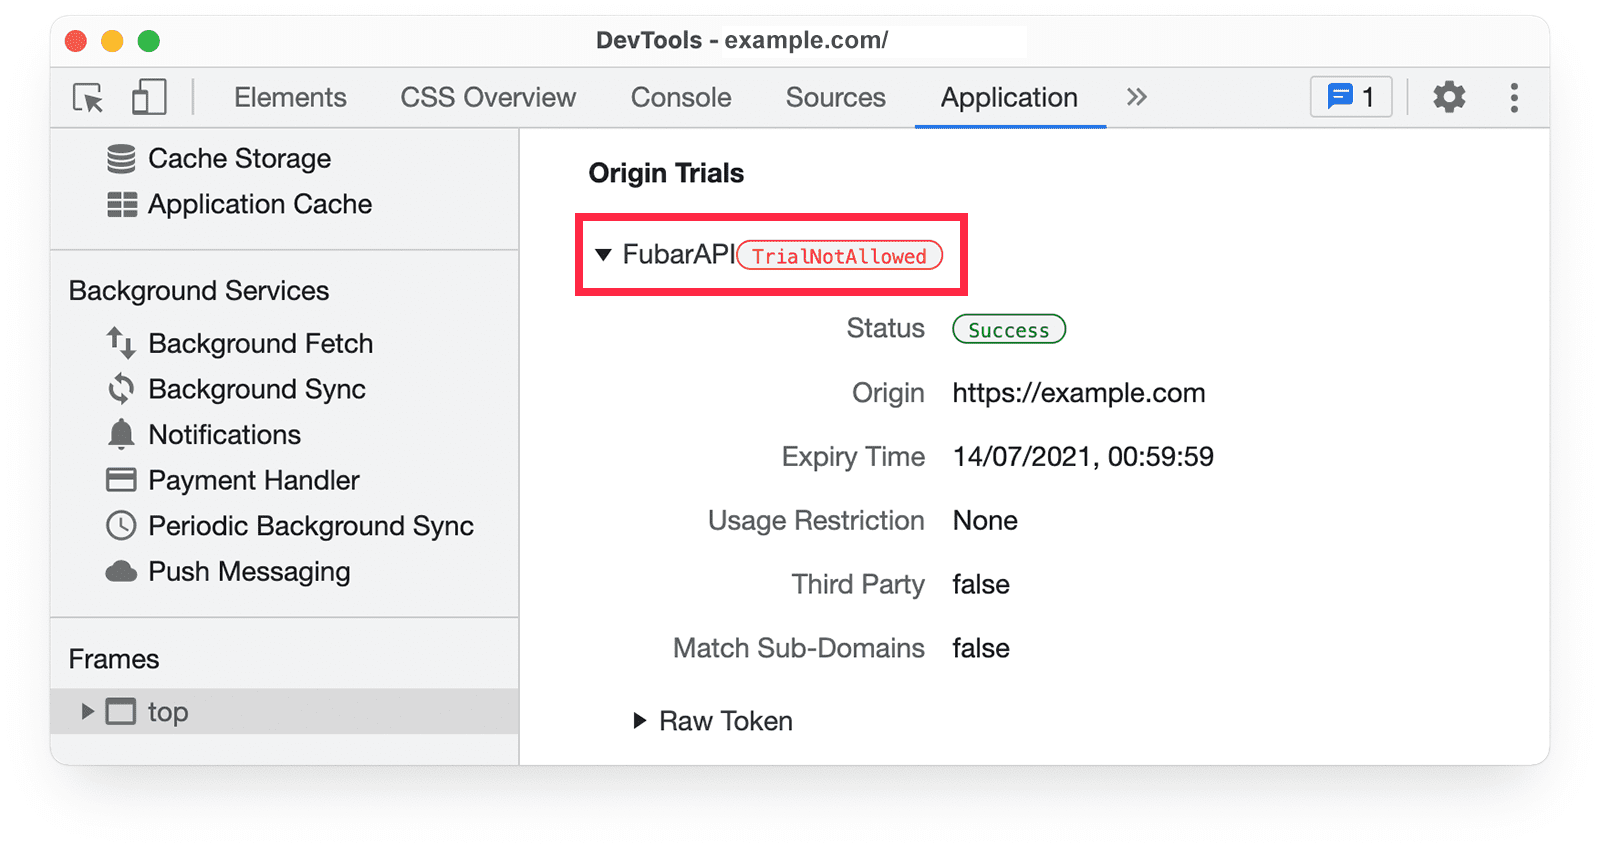 Informações sobre testes de origem do Chrome DevTools no painel &quot;Application&quot; mostrando o aviso TrialNotAllowed.